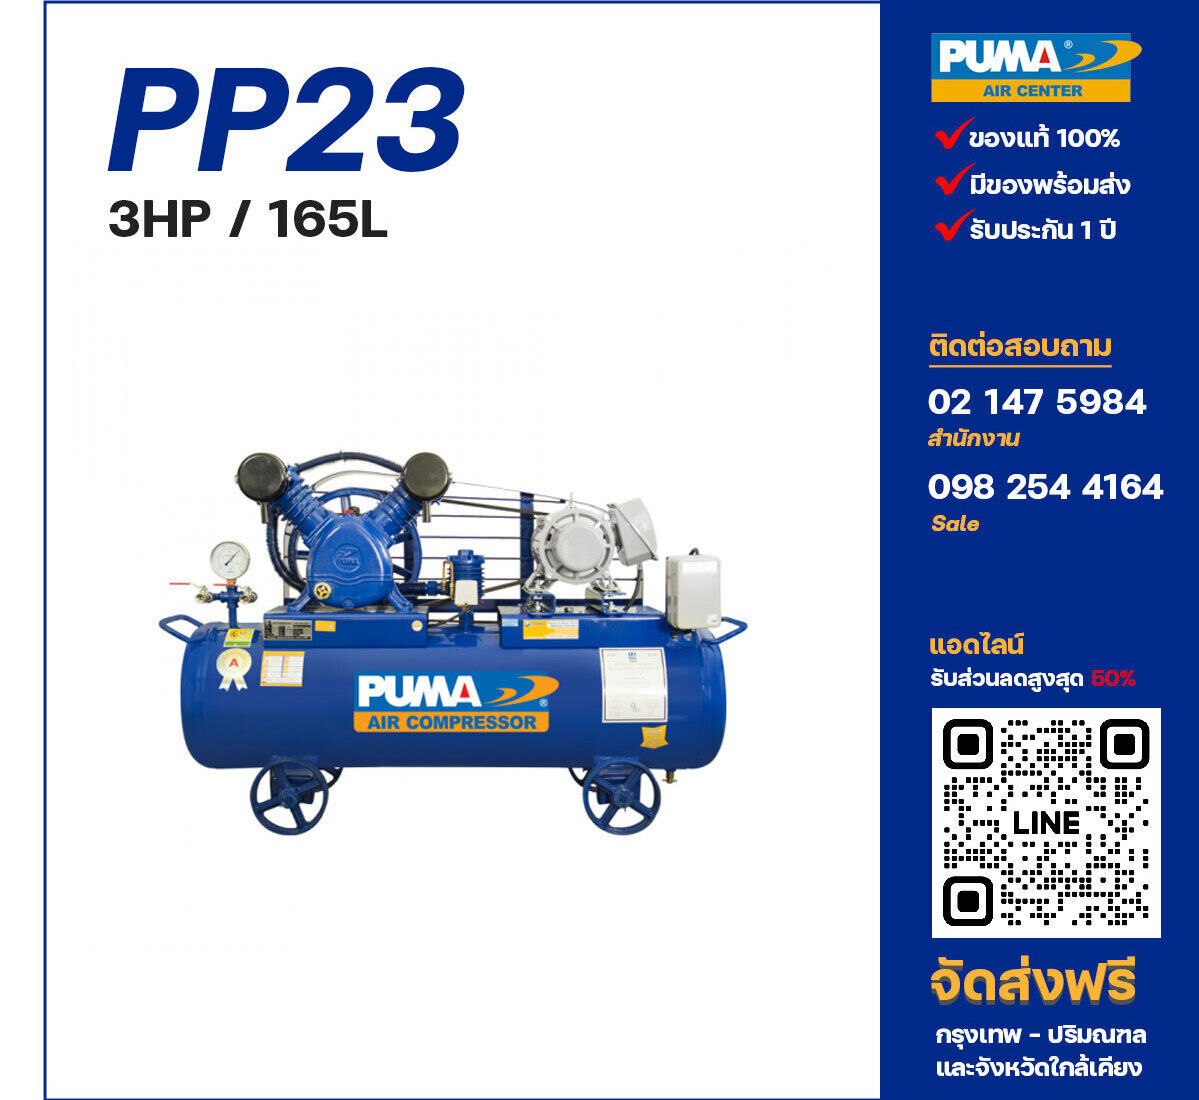 ปั๊มลมพูม่า PUMA PP23-PPM220V/380V ปั๊มลมลูกสูบ ขนาด 2 สูบ 3 แรงม้า 165 ลิตร PUMA พร้อมมอเตอร์ PUMA ไฟ 220V/380V ส่งฟรี กรุงเทพฯ-ปริมณฑล รับประกัน 1 ปี